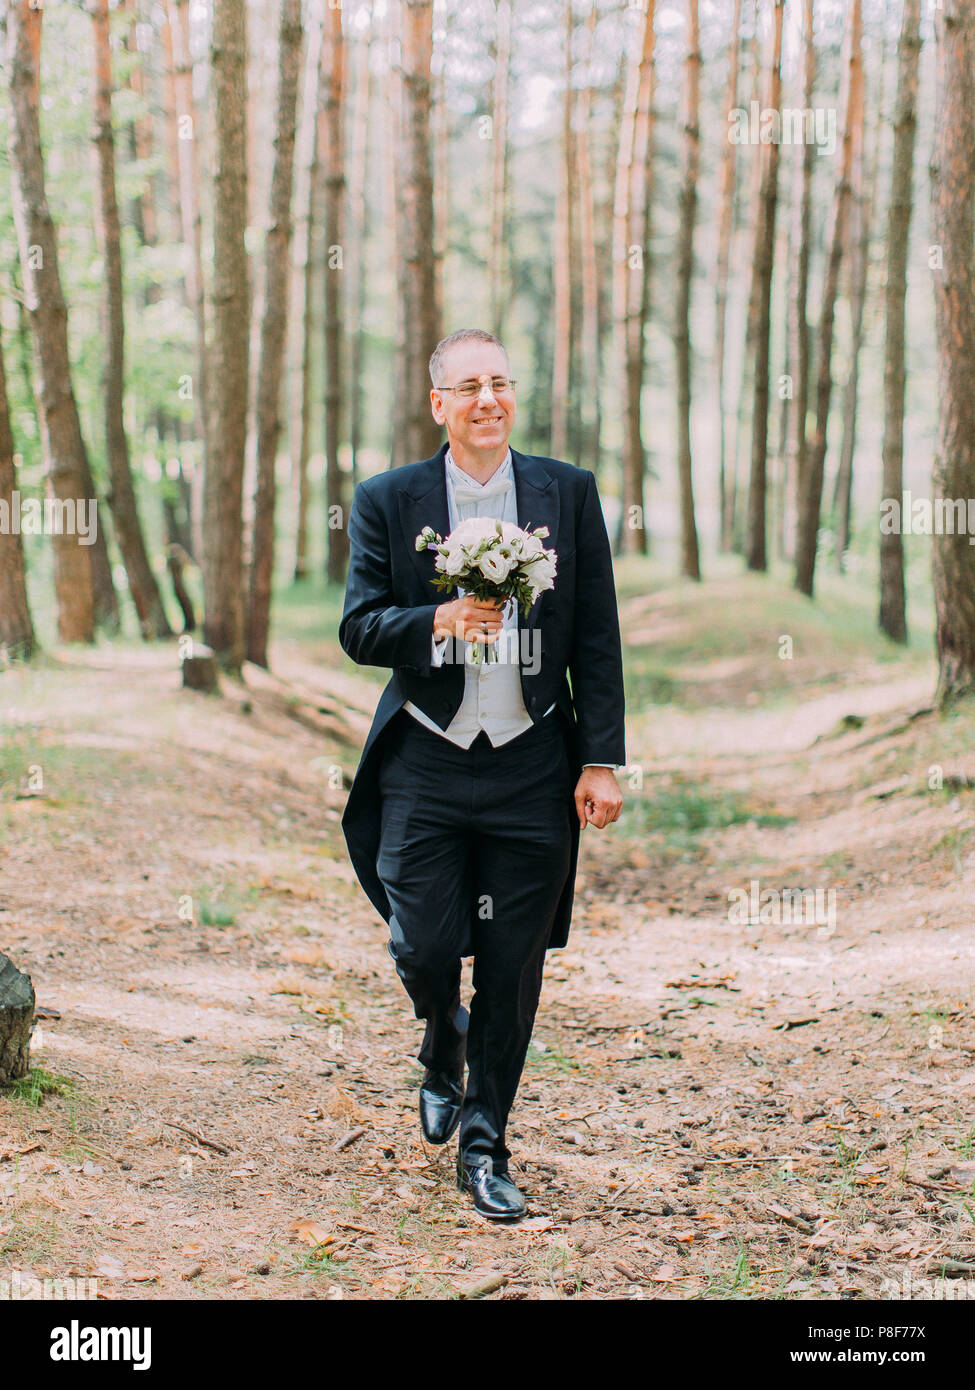 La passeggiata del bello lo sposo con il matrimonio bouquet lungo la foresta. Foto Stock